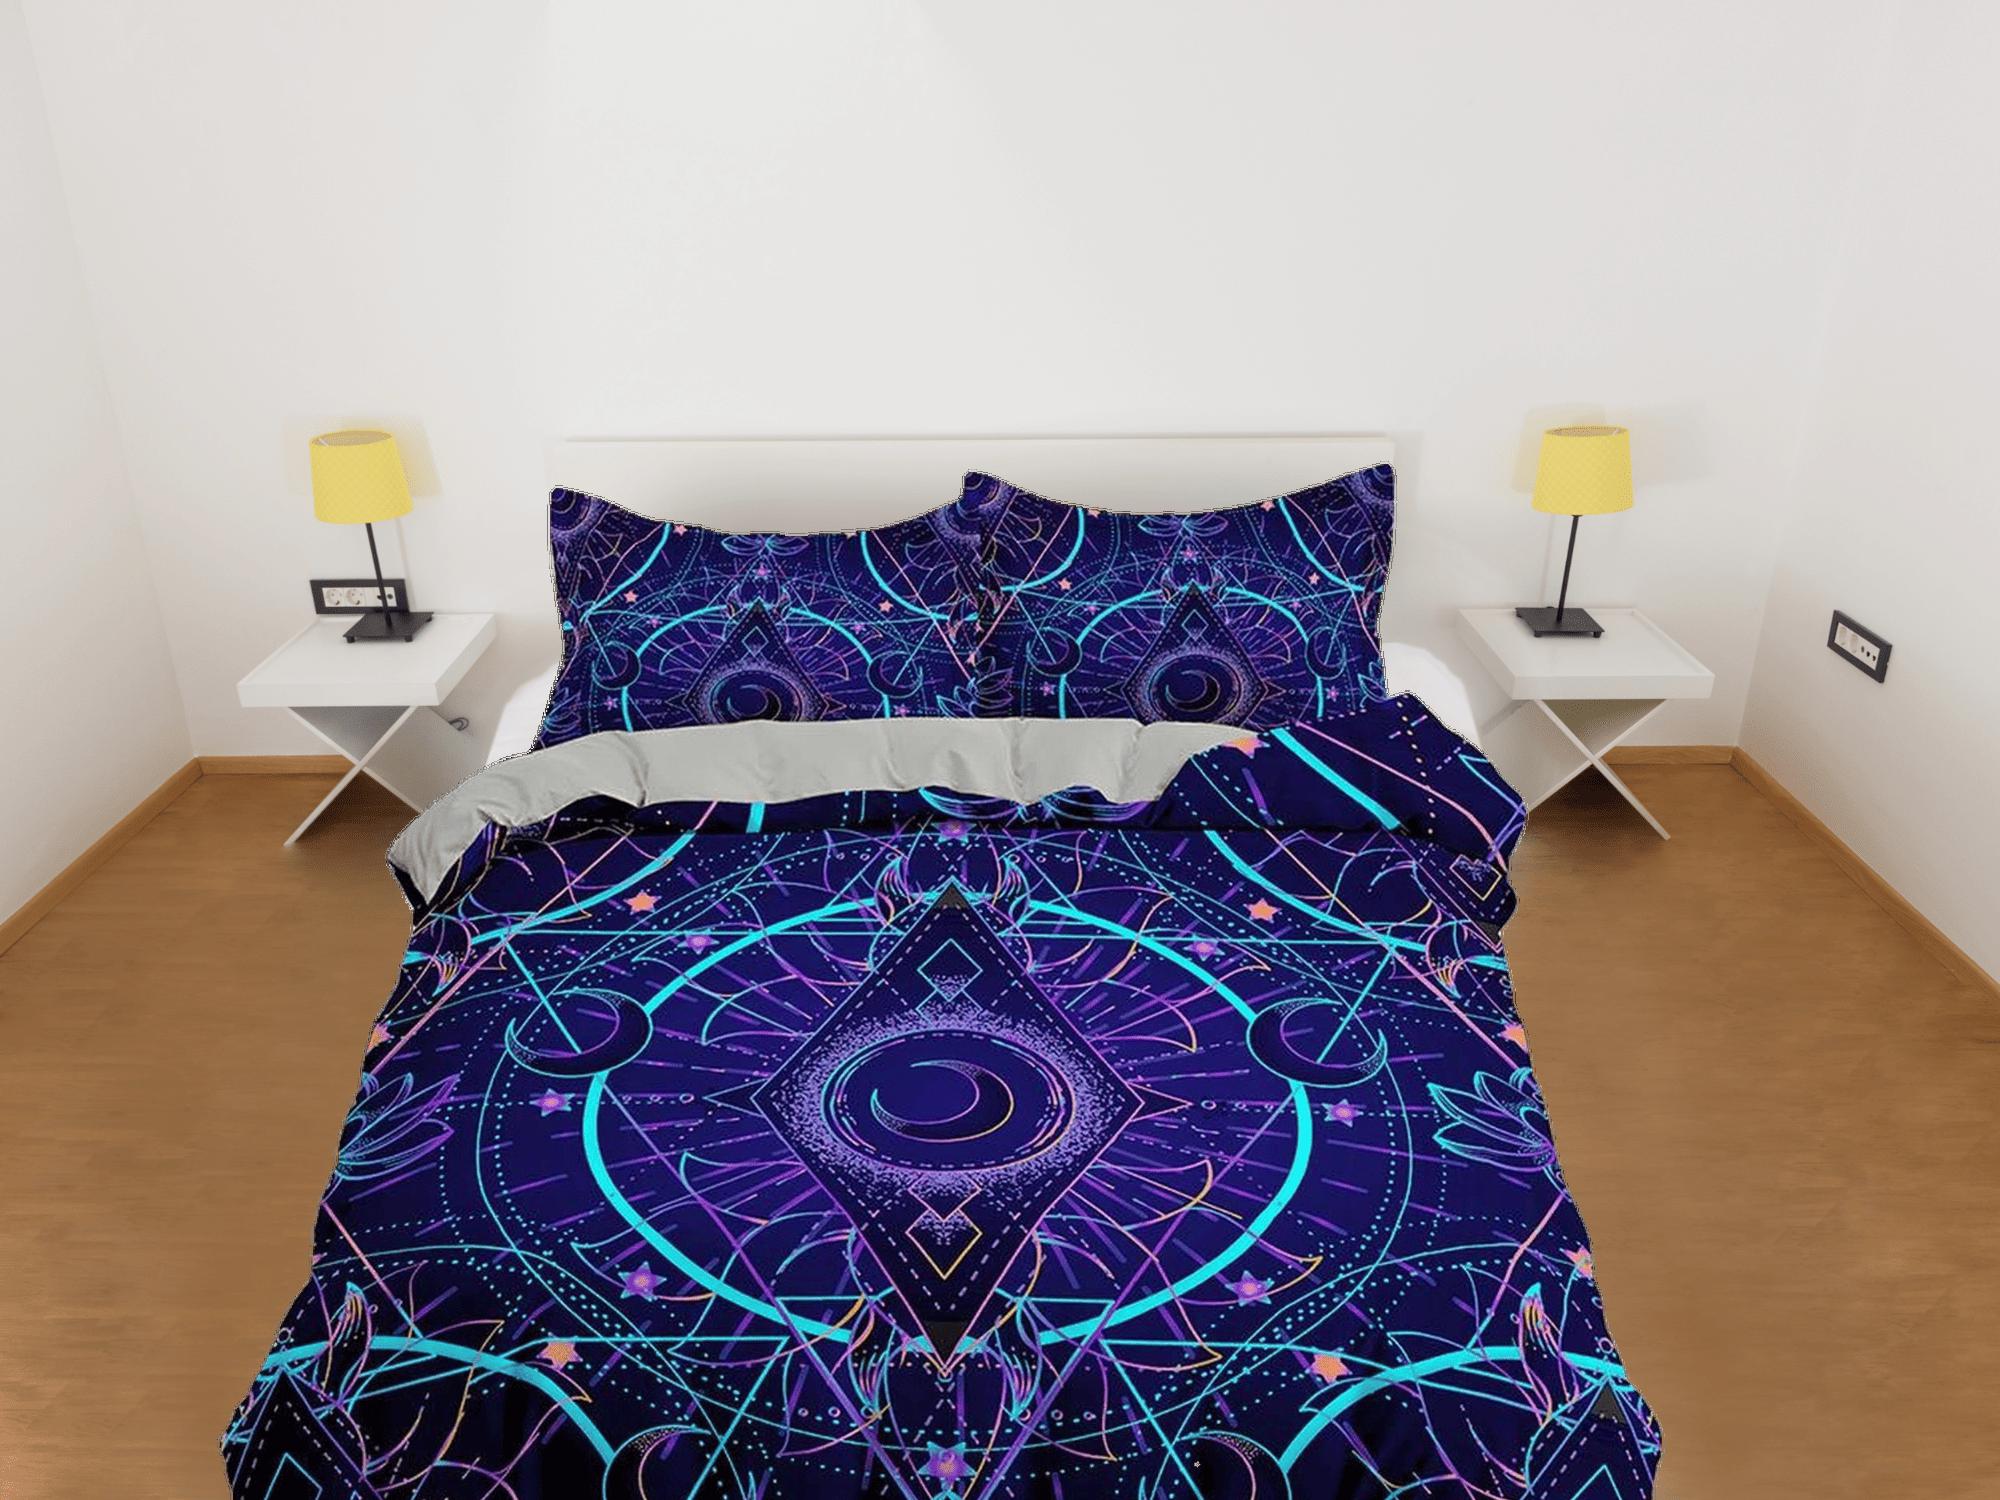 daintyduvet Celestial bedding purple, crescent moon, witchy decor dorm bedding, aesthetic duvet, boho bedding set full king queen, astrology gift gothic